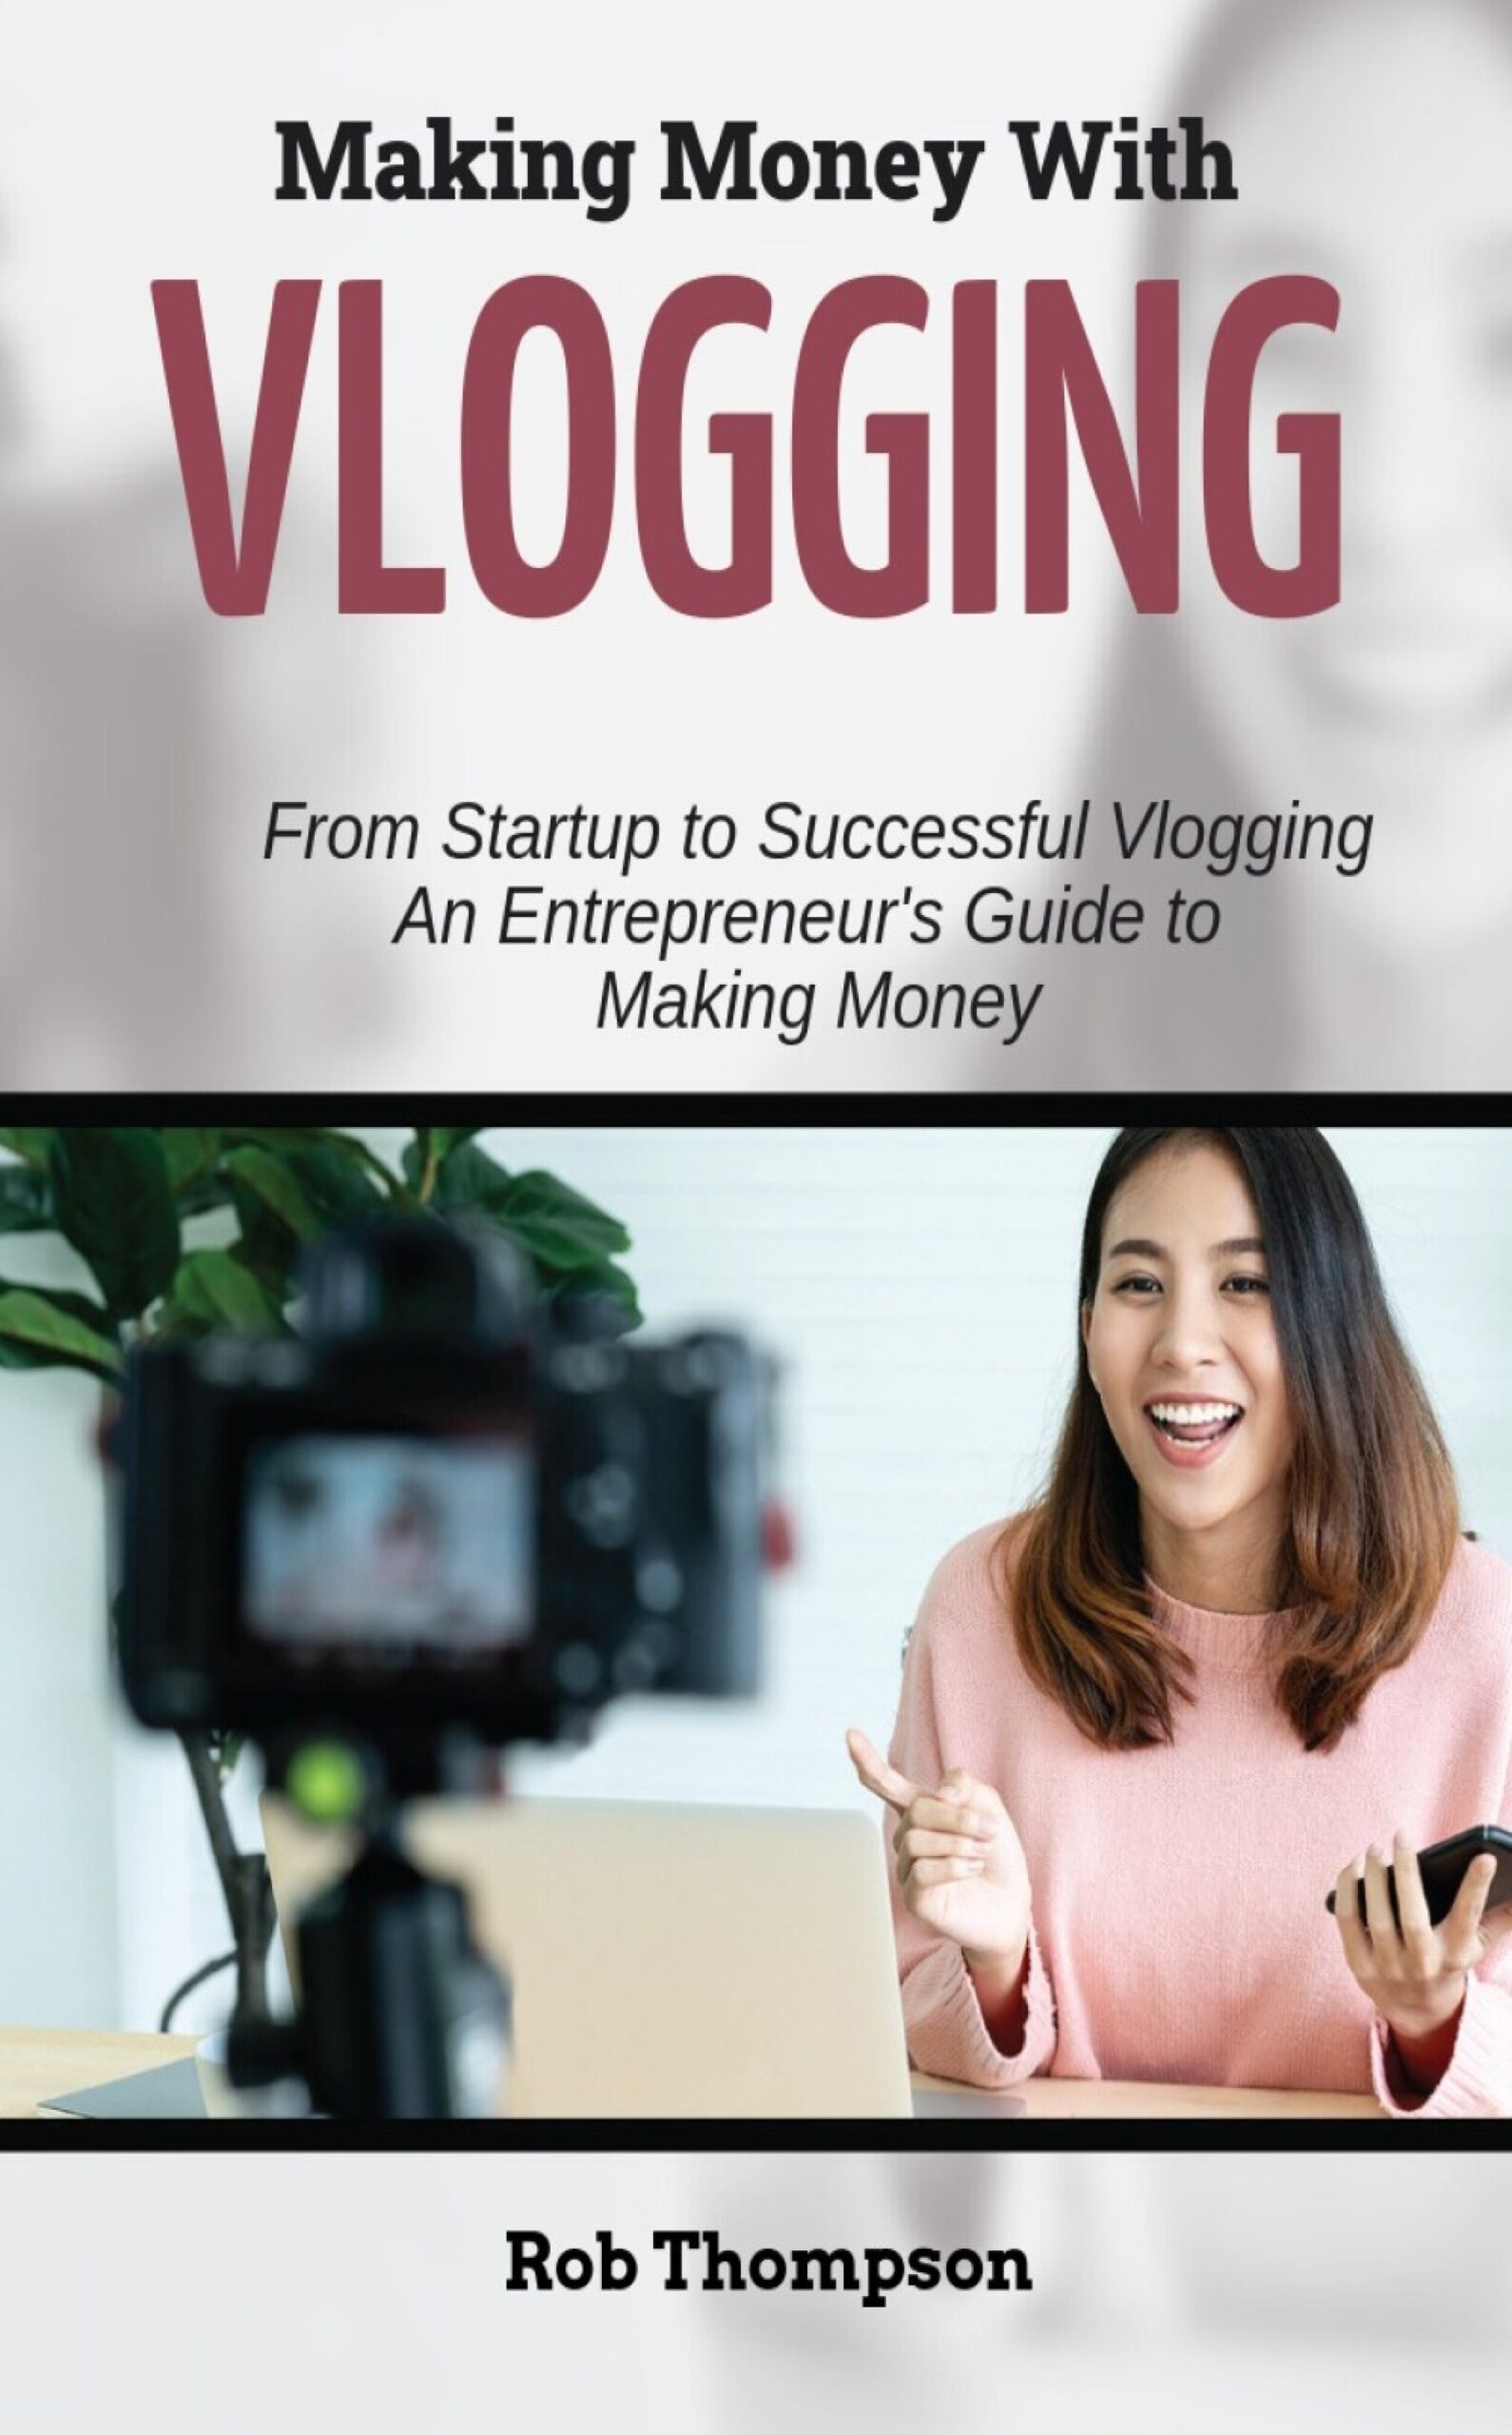 Make Money Vlogging by Rob Thompson